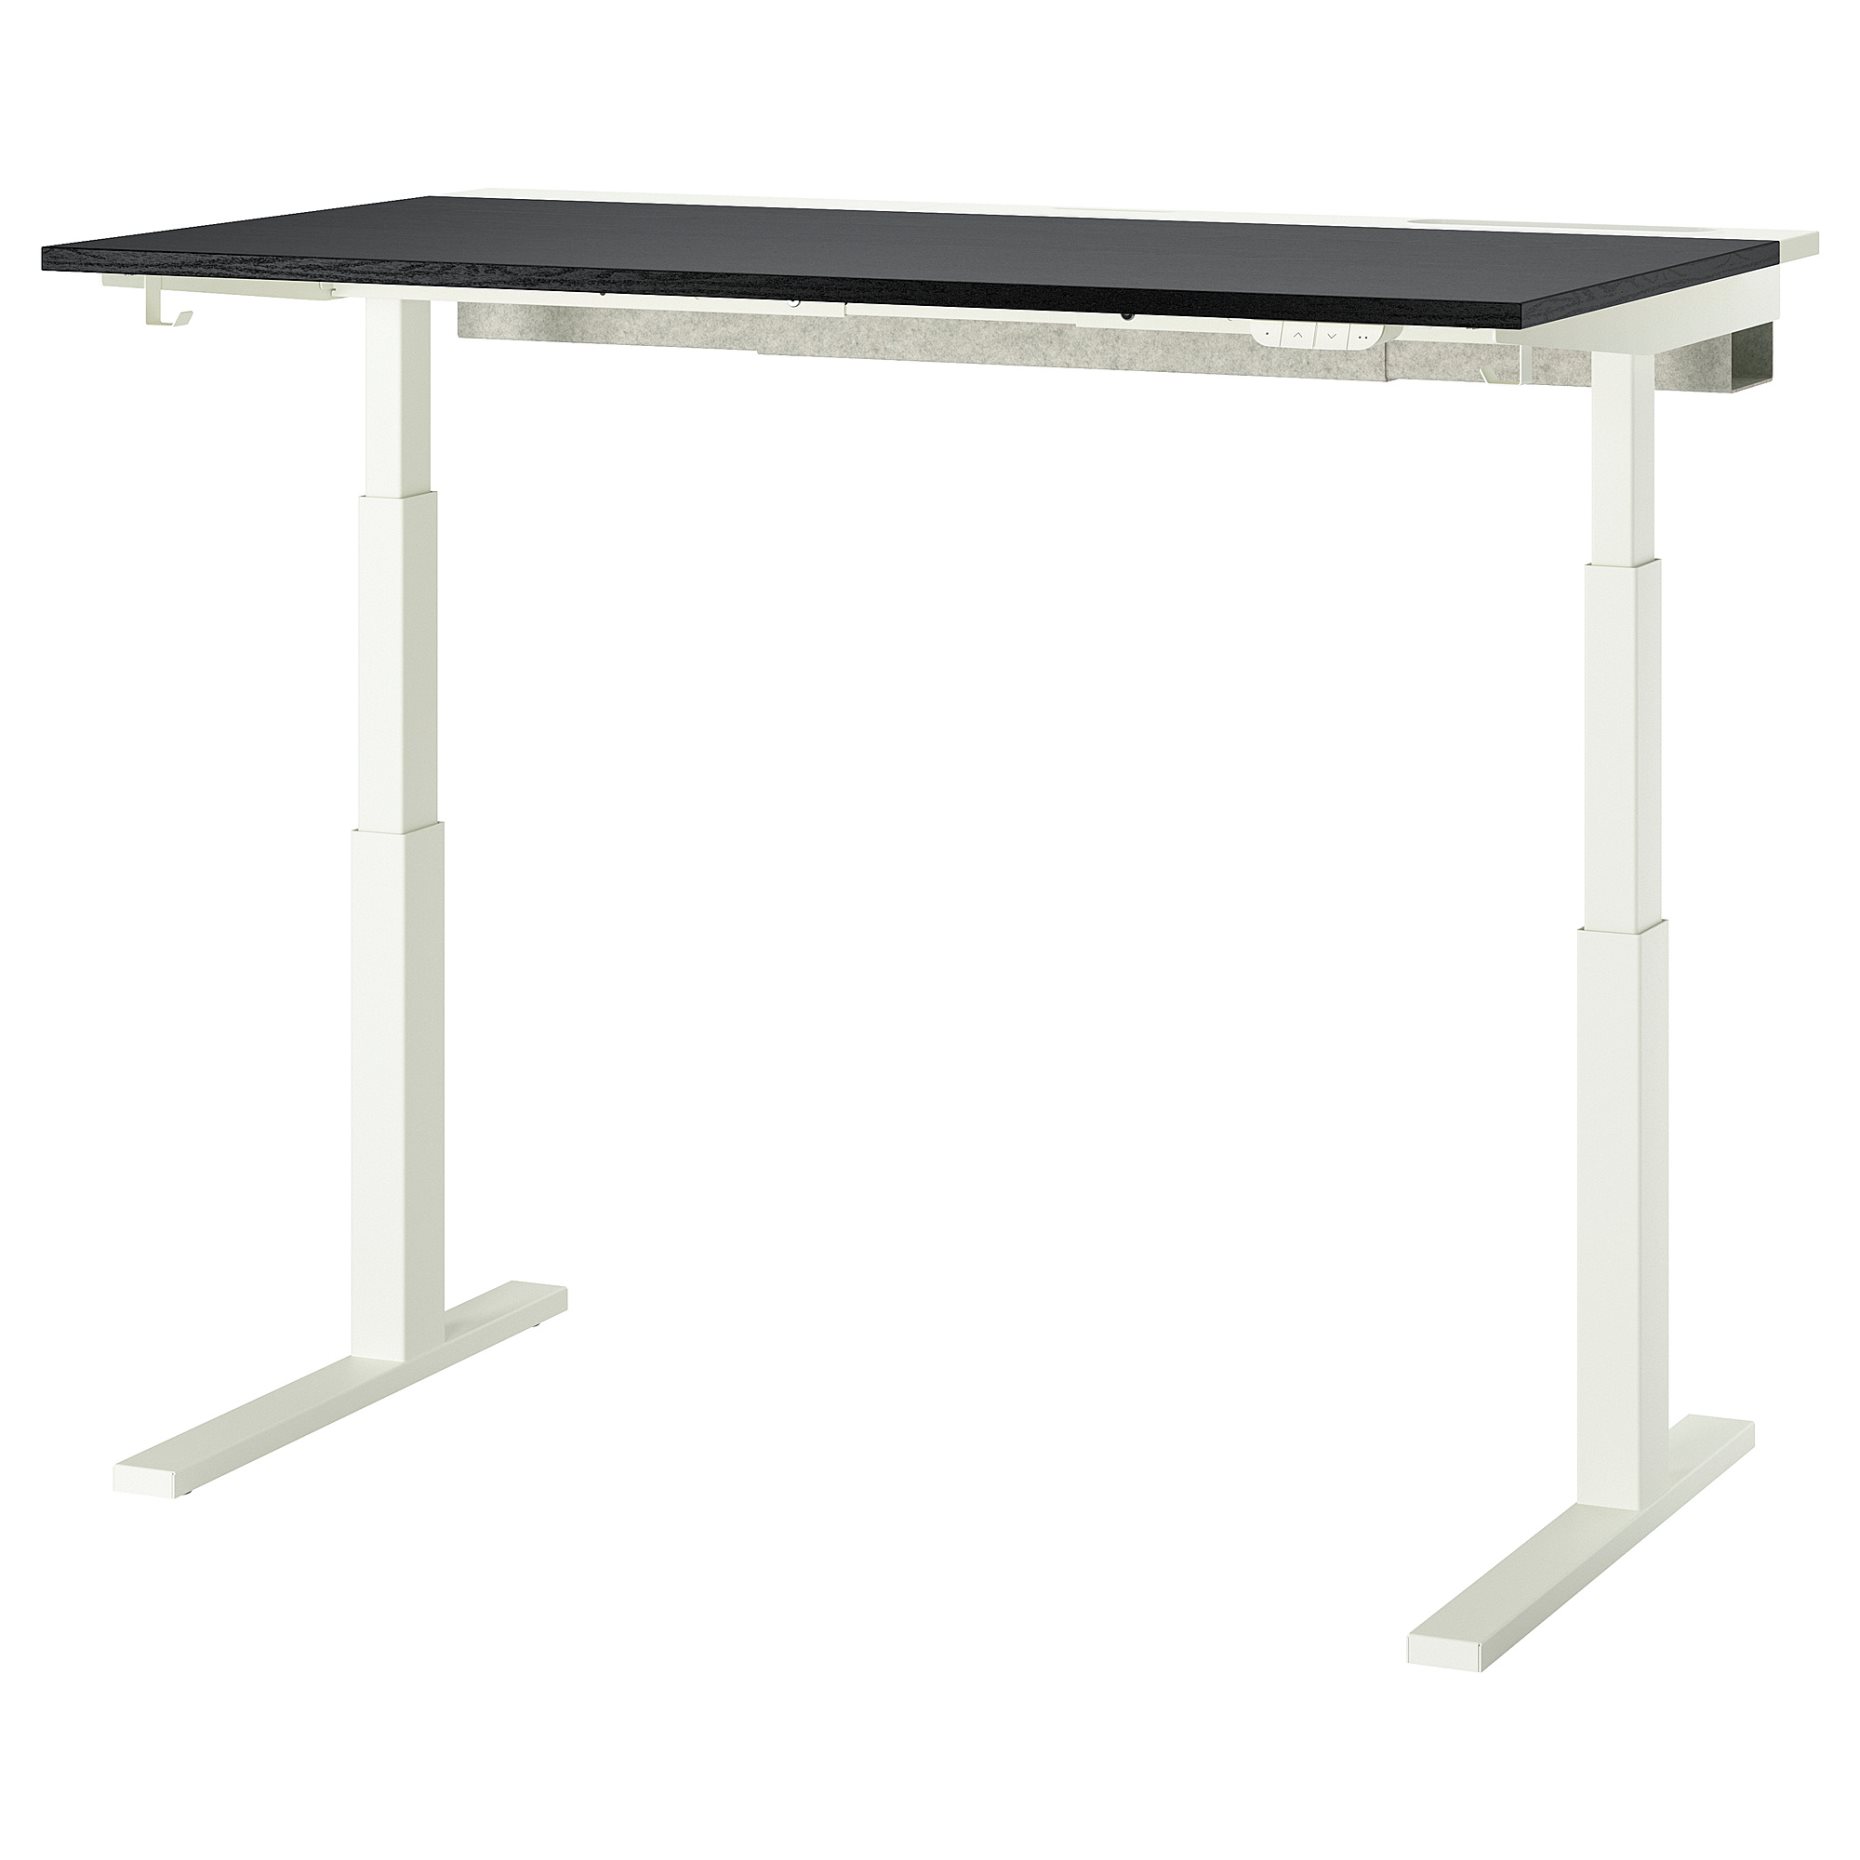 MITTZON, table top, 140x68 cm, 705.277.58